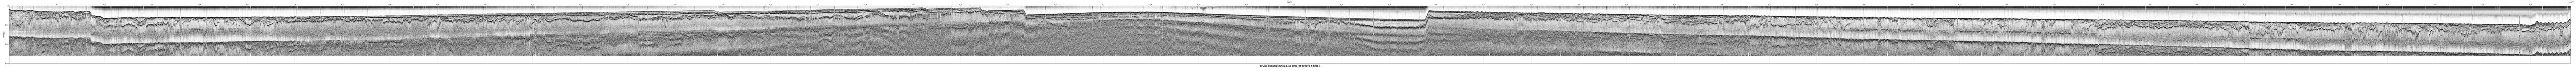 00SCC04 b00c_95 seismic profile image